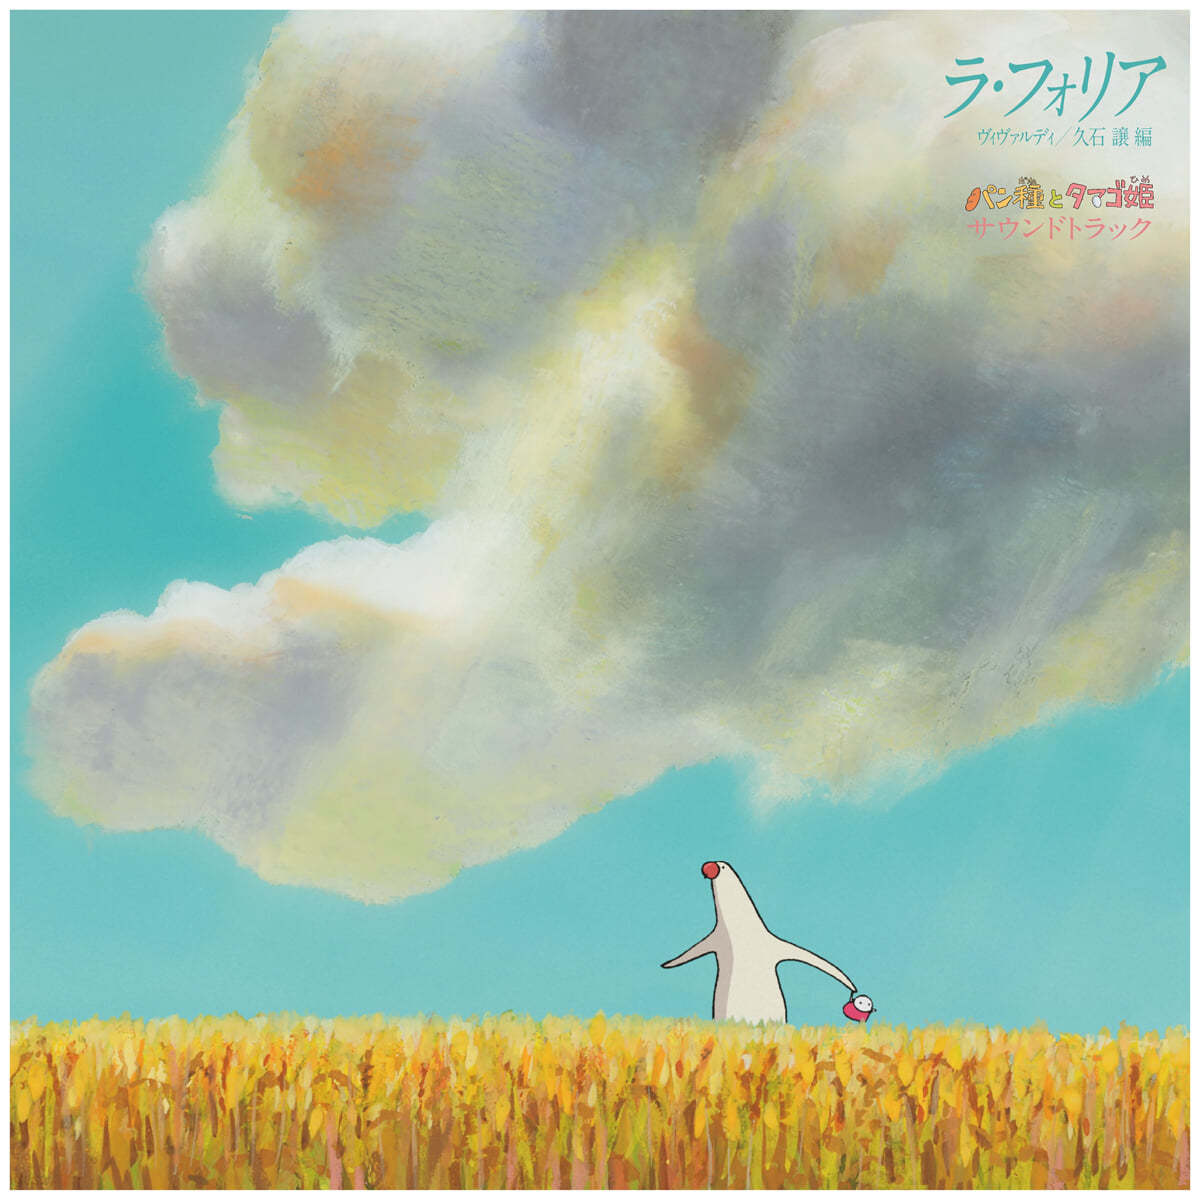 빵반죽과 계란 공주 영화음악 (Mr. Dough and The Egg Princess OST by Hisaishi Joe) [LP] 